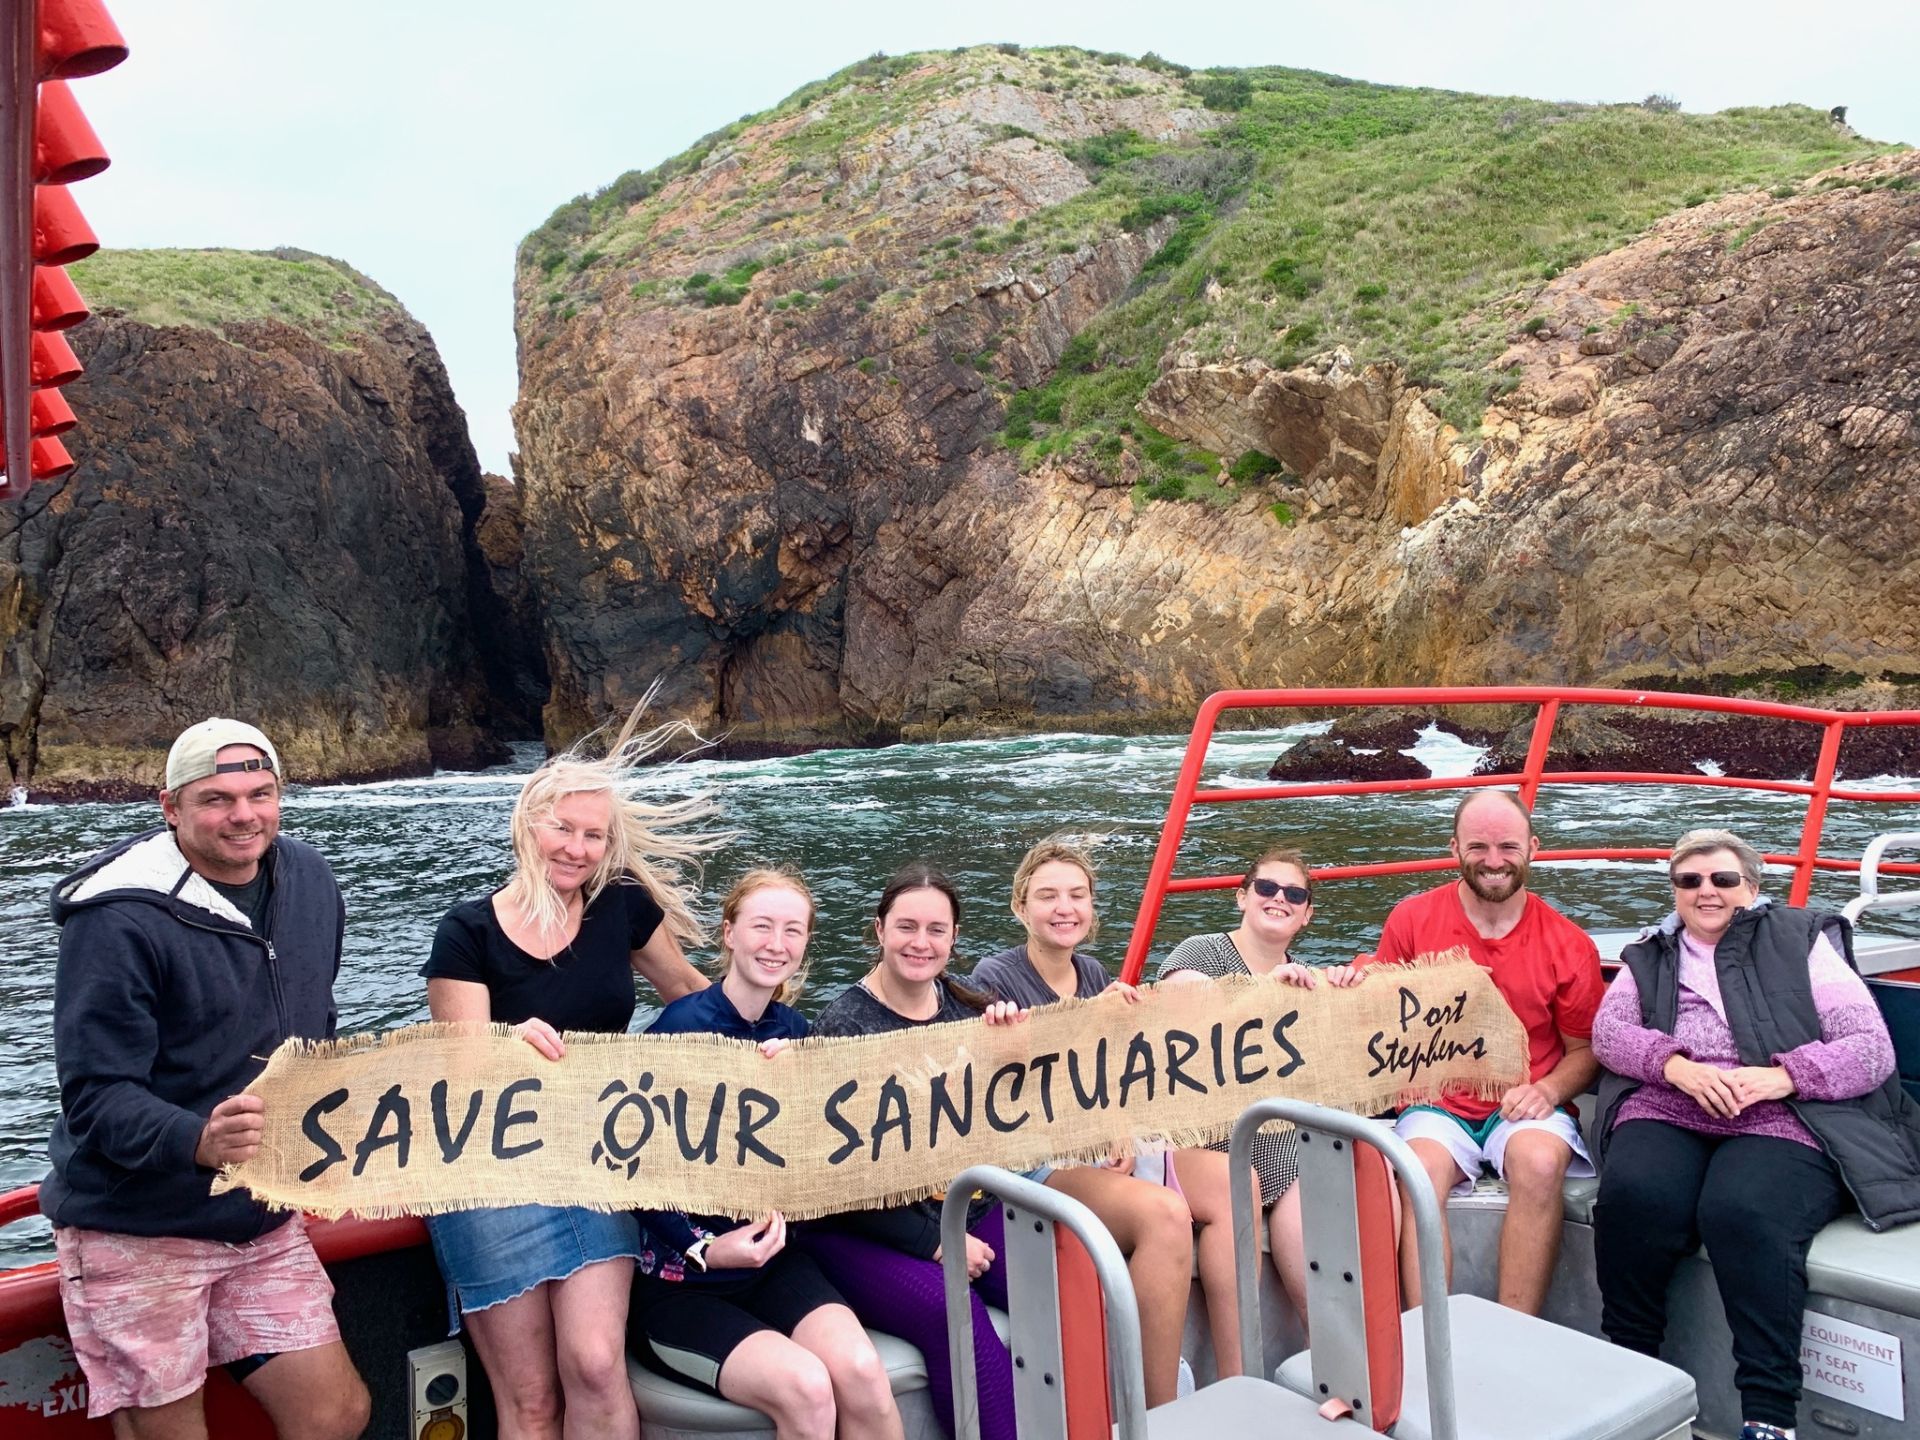 Save our sanctuaries